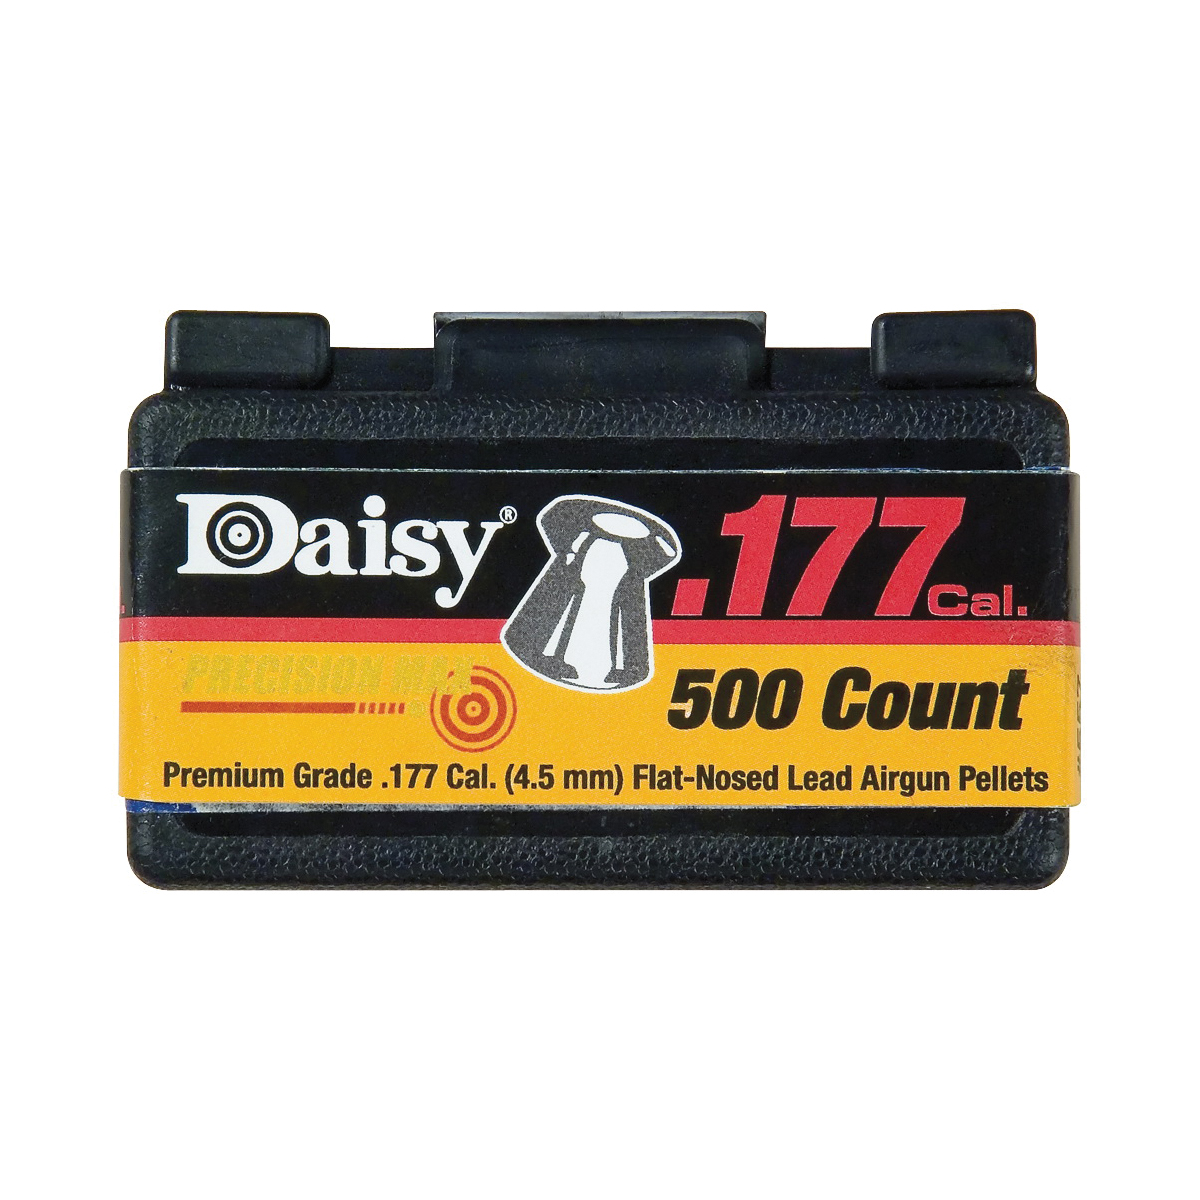 Daisy 557